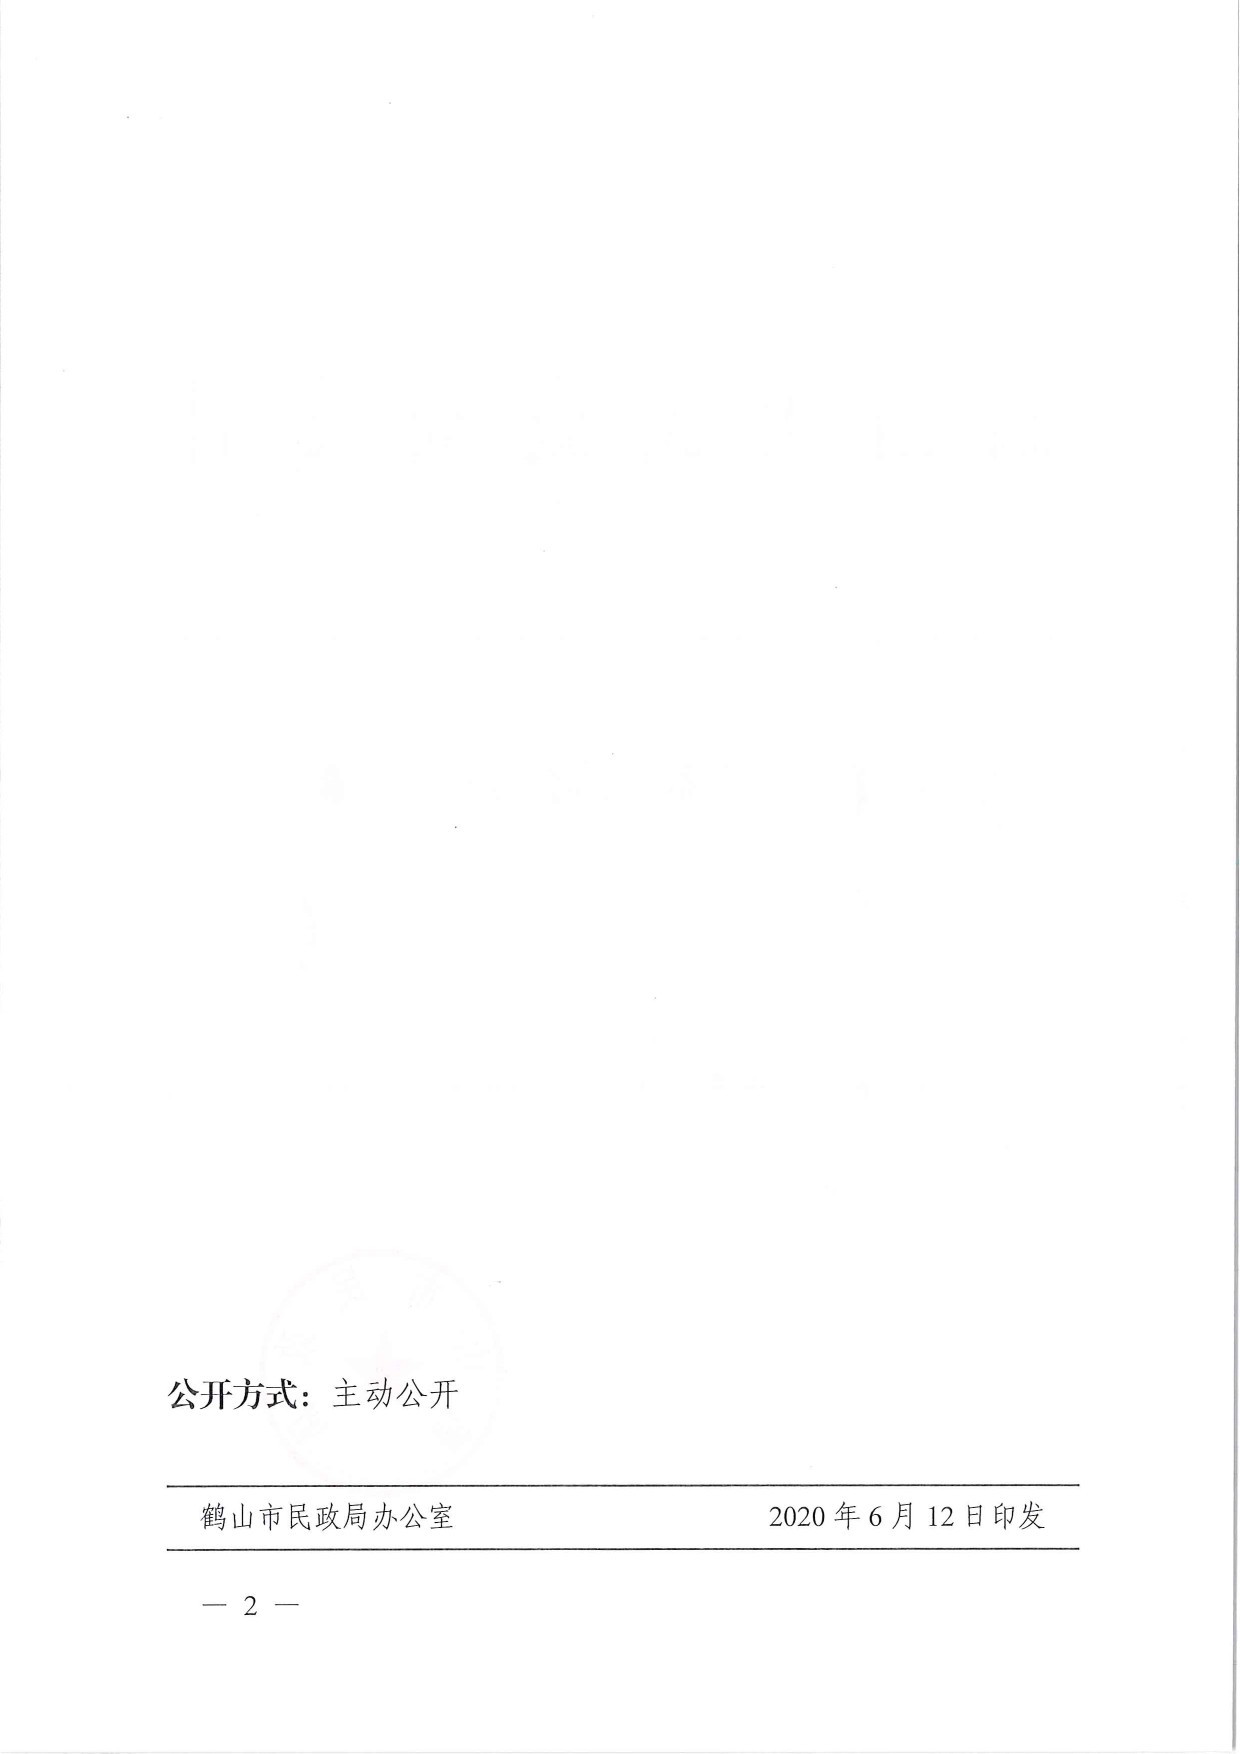 鹤民社〔2020〕29号关于准予鹤山市茶叶协会变更登记的批复-2.jpg